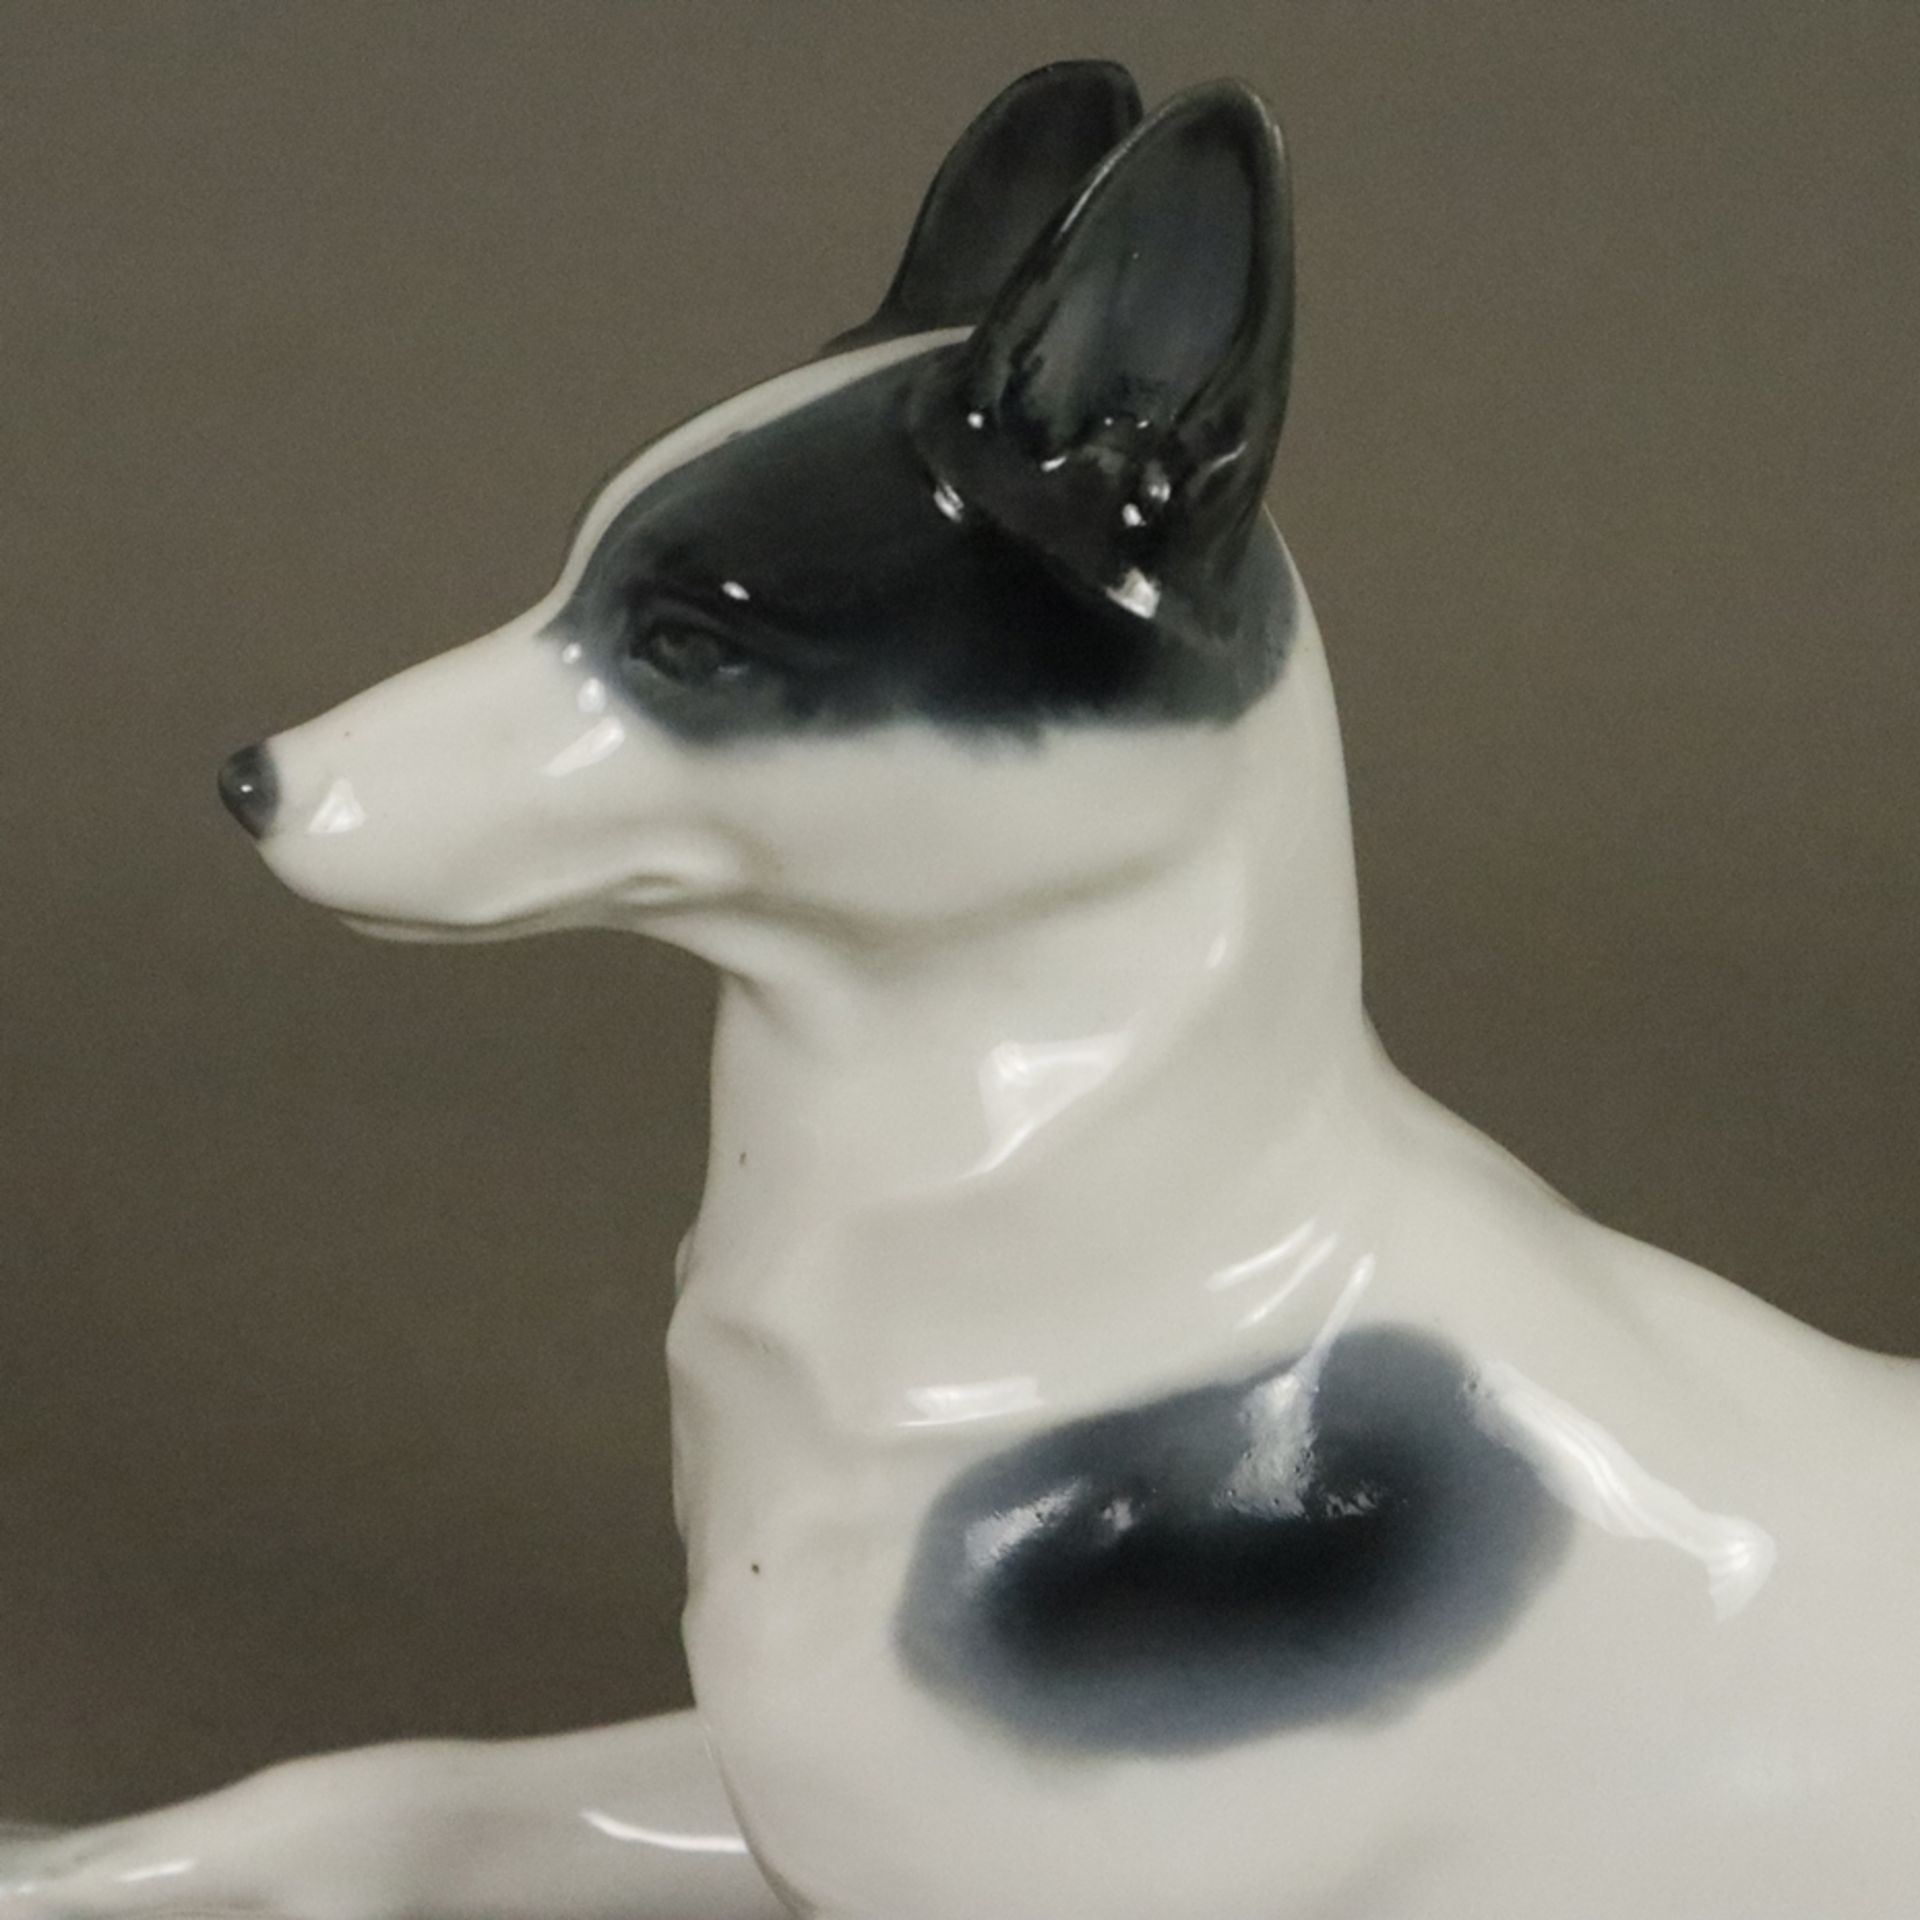 Liegende Hundefigur - Metzler & Orloff, Porzellan glasiert in Grau-Schwarztönen staffiert, Bodenmar - Bild 3 aus 7